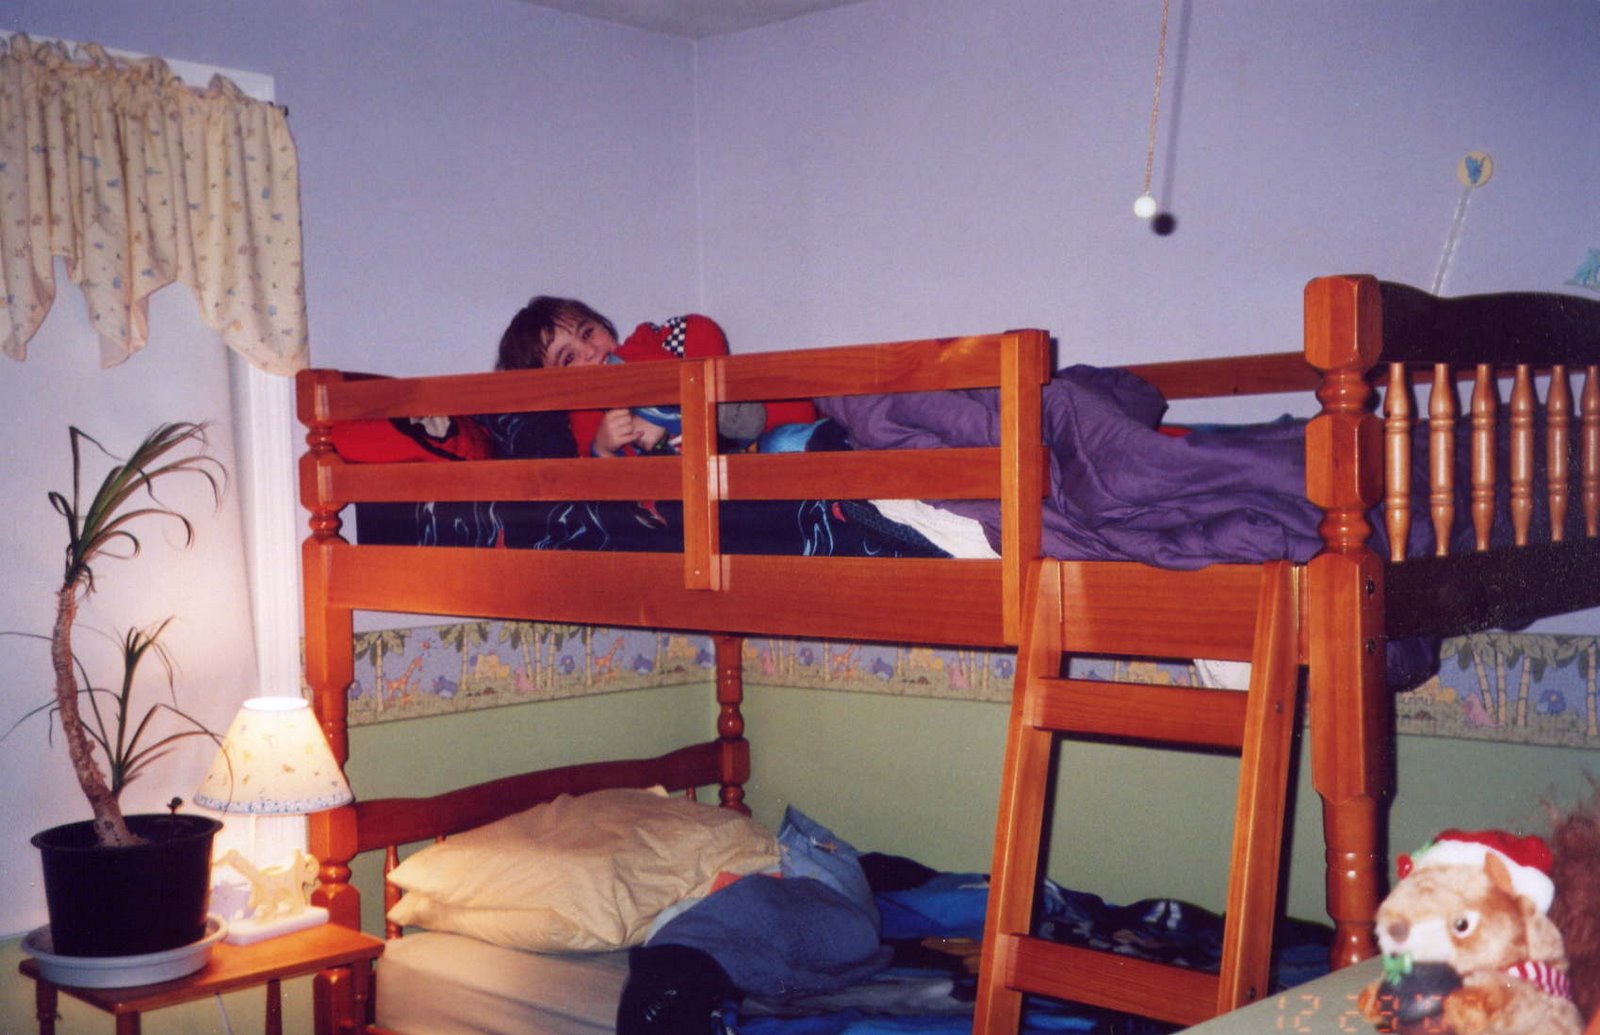 [bunk+beds.jpg]